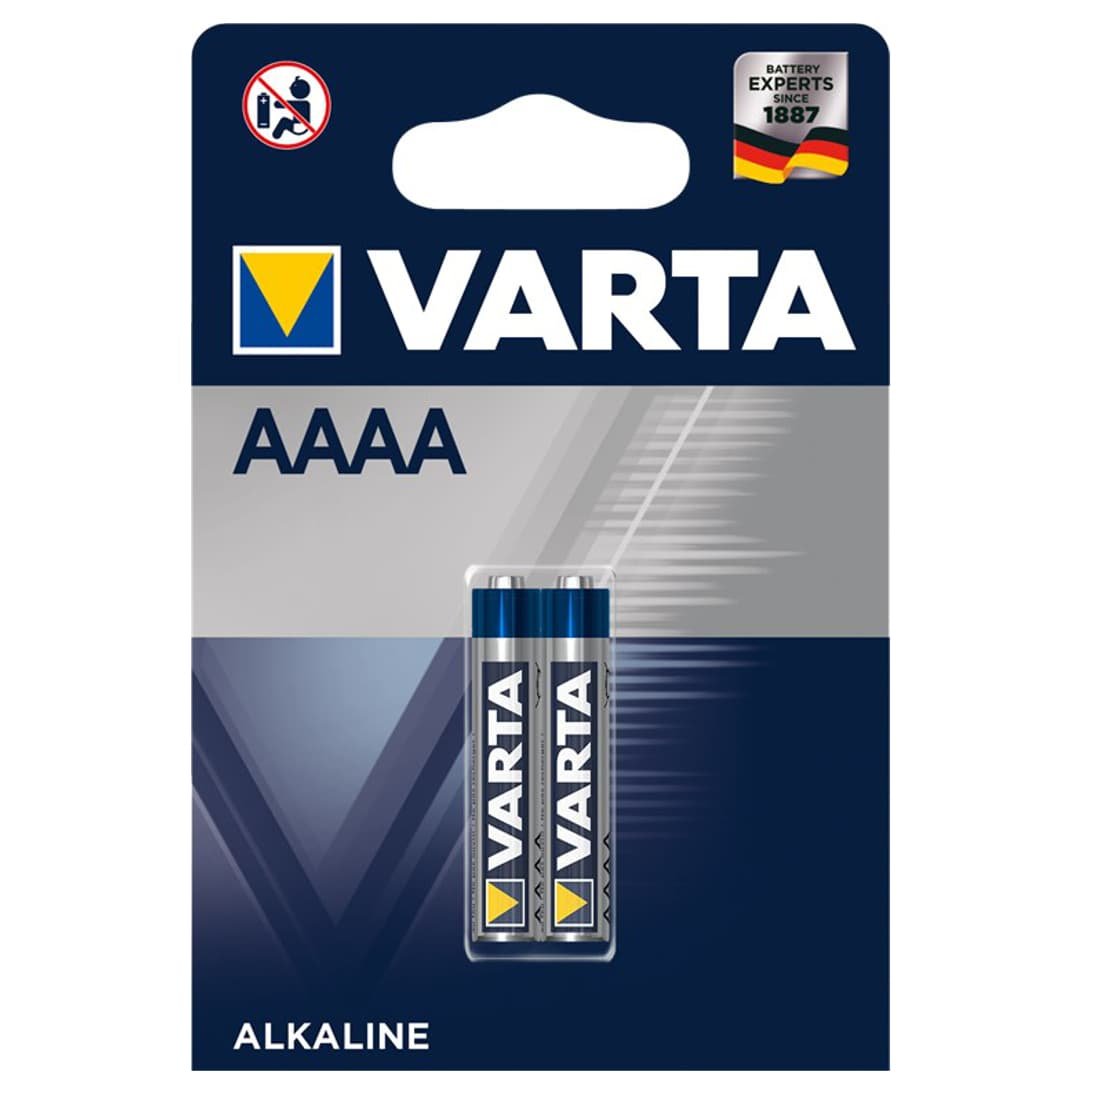 Se AAAA Batterier - Varta - 2 stk (71738) hos PlusLED.dk